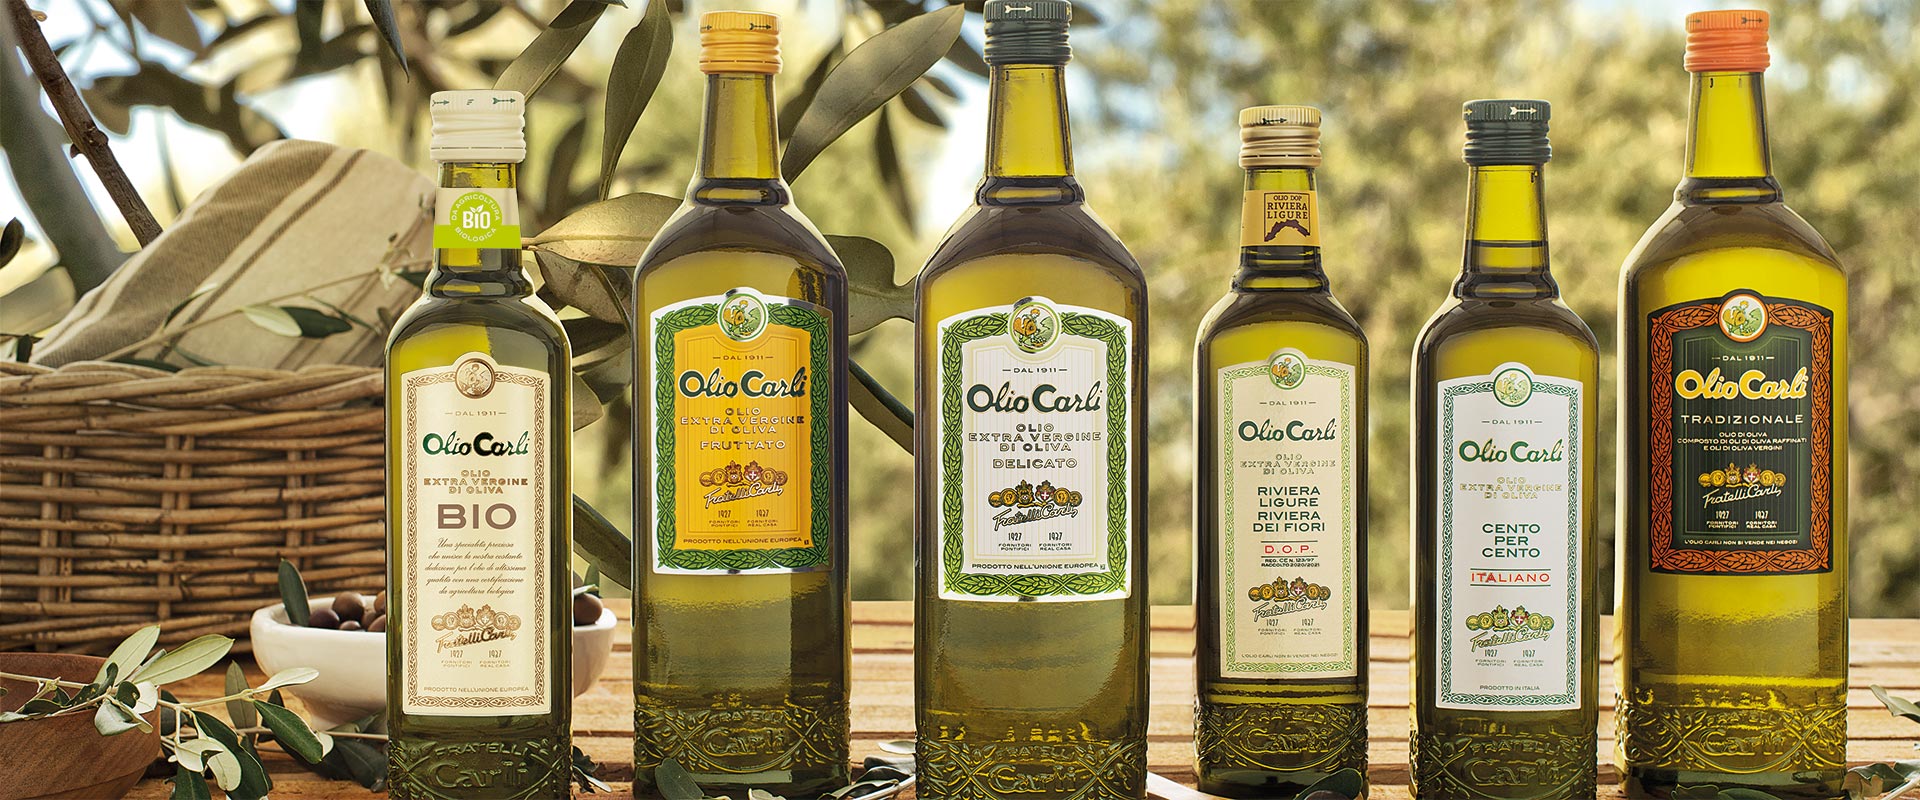 Come leggere etichetta olio d’oliva – Carli